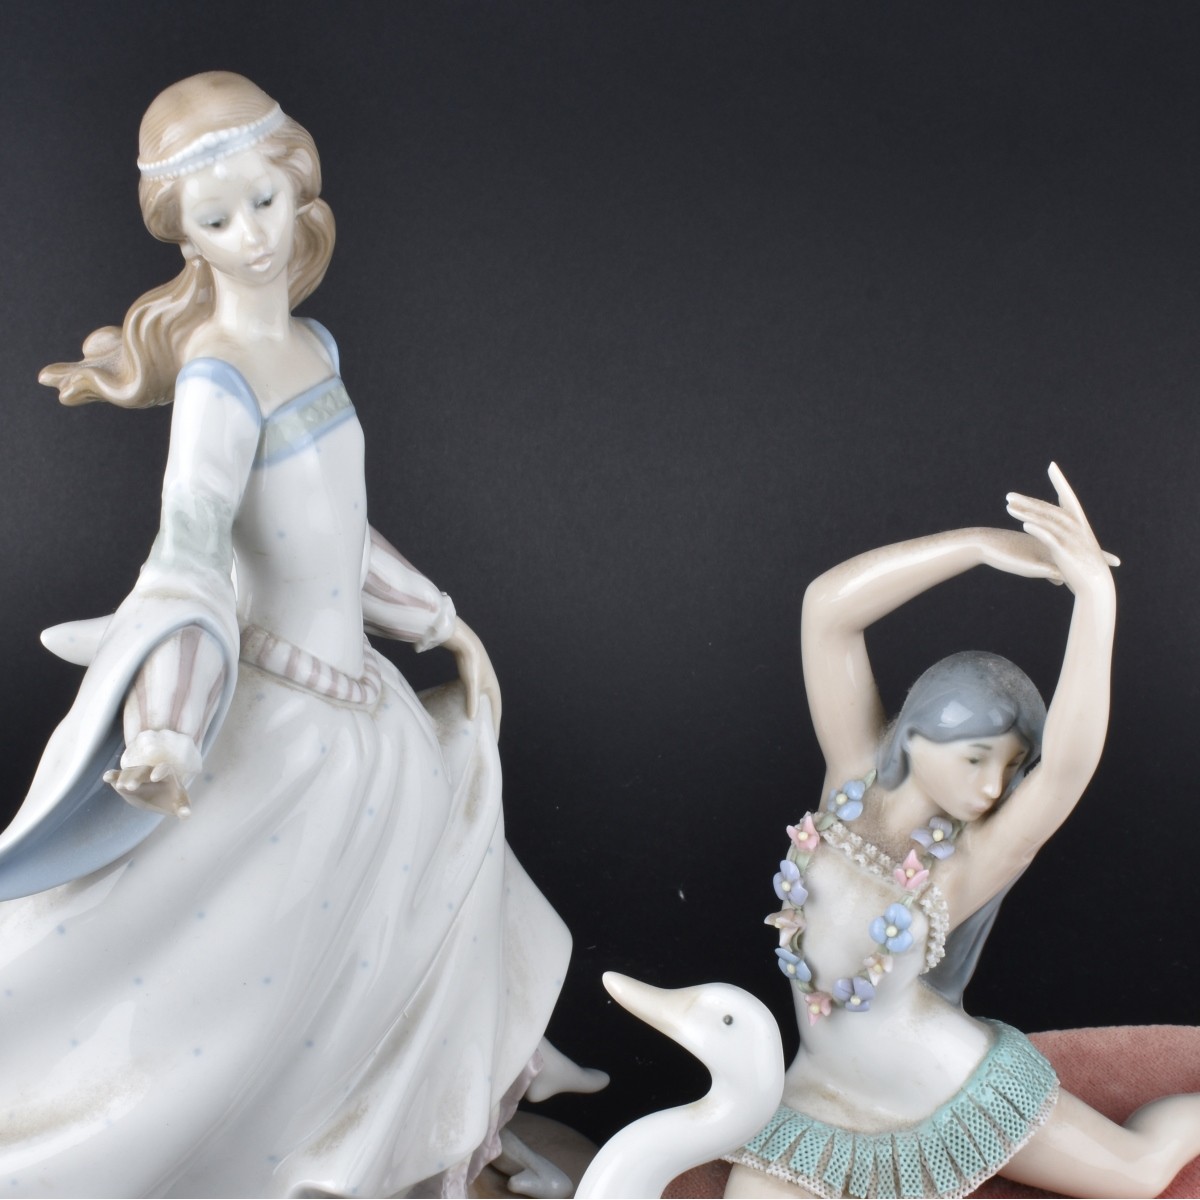 3 Lladro Figurines